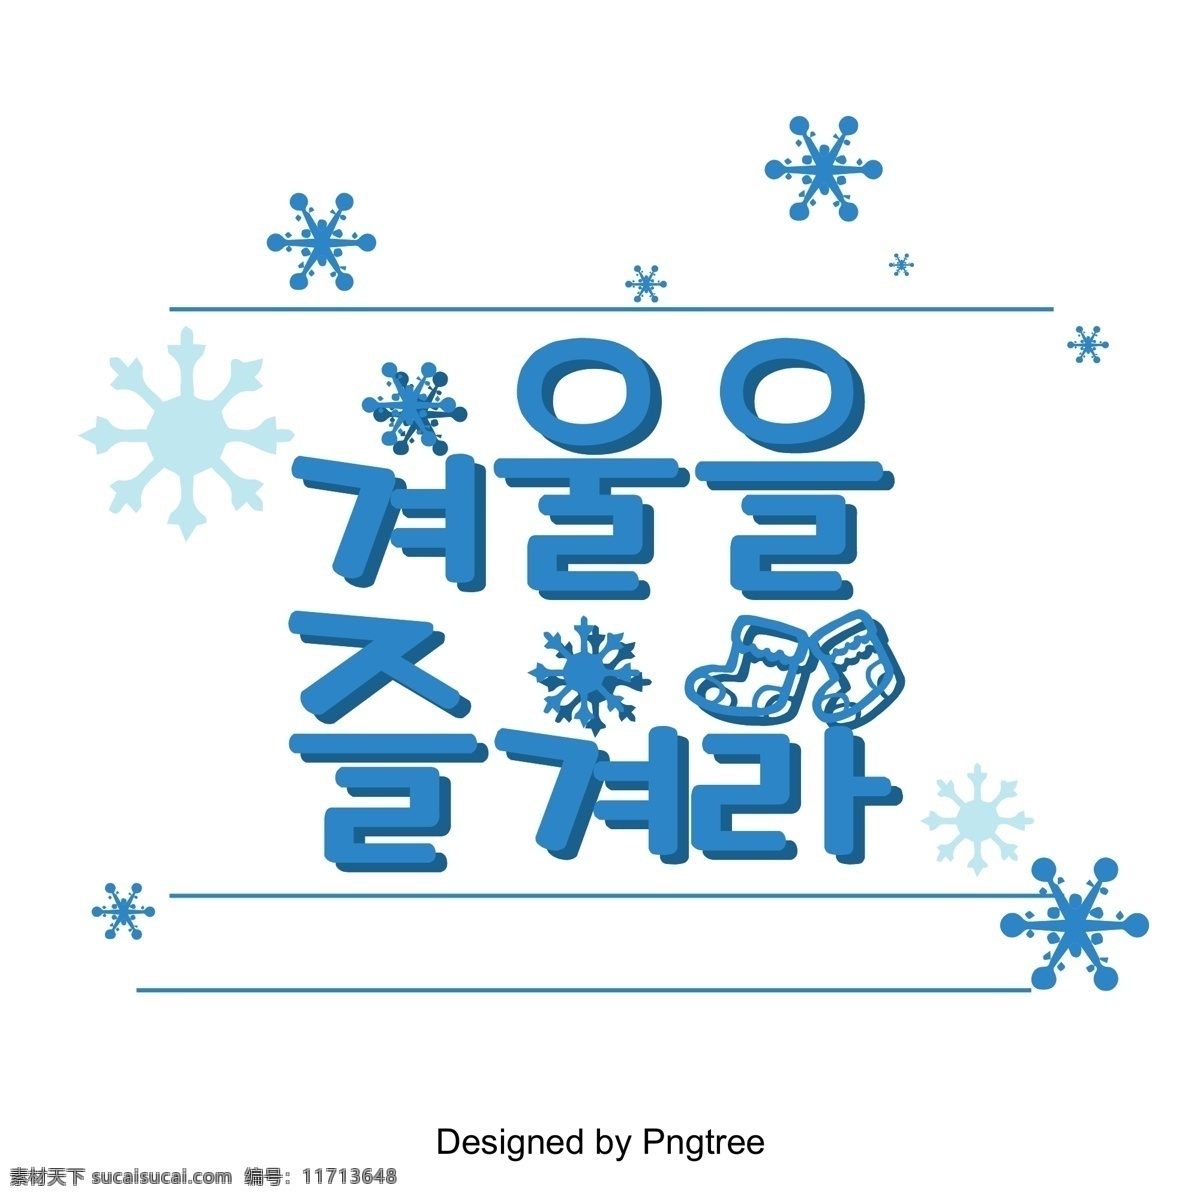 冬天 蓝色 雪霜 那个 场景 中 人物 喜欢在冬天 白色和蓝色 雪花 立体 韩文 现场 享受 冬季